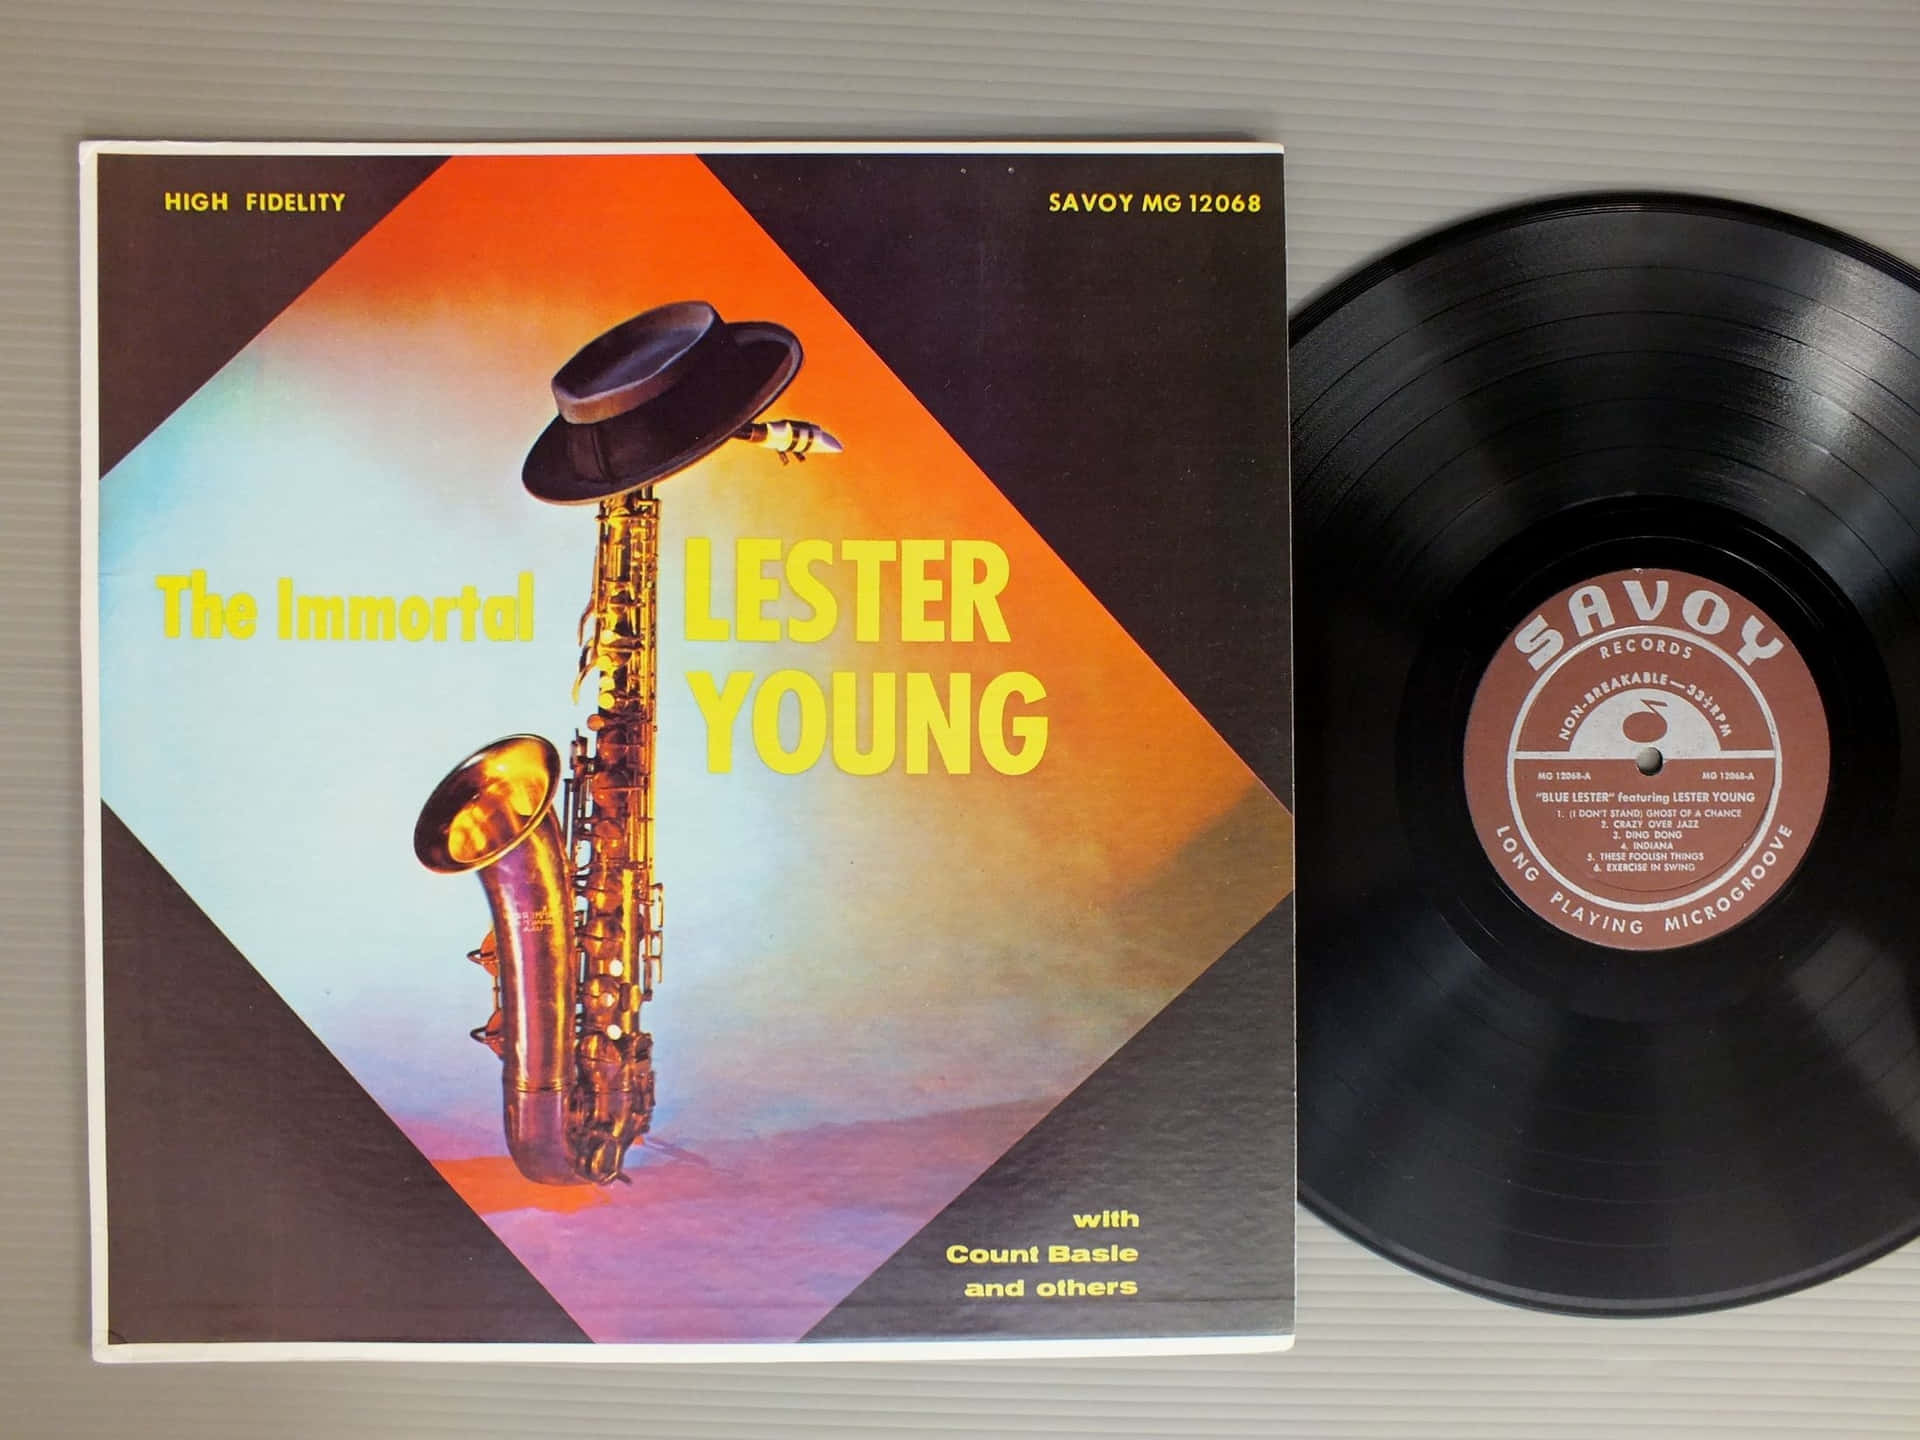 Den udødelige Lester Young Vinyl Record. Wallpaper